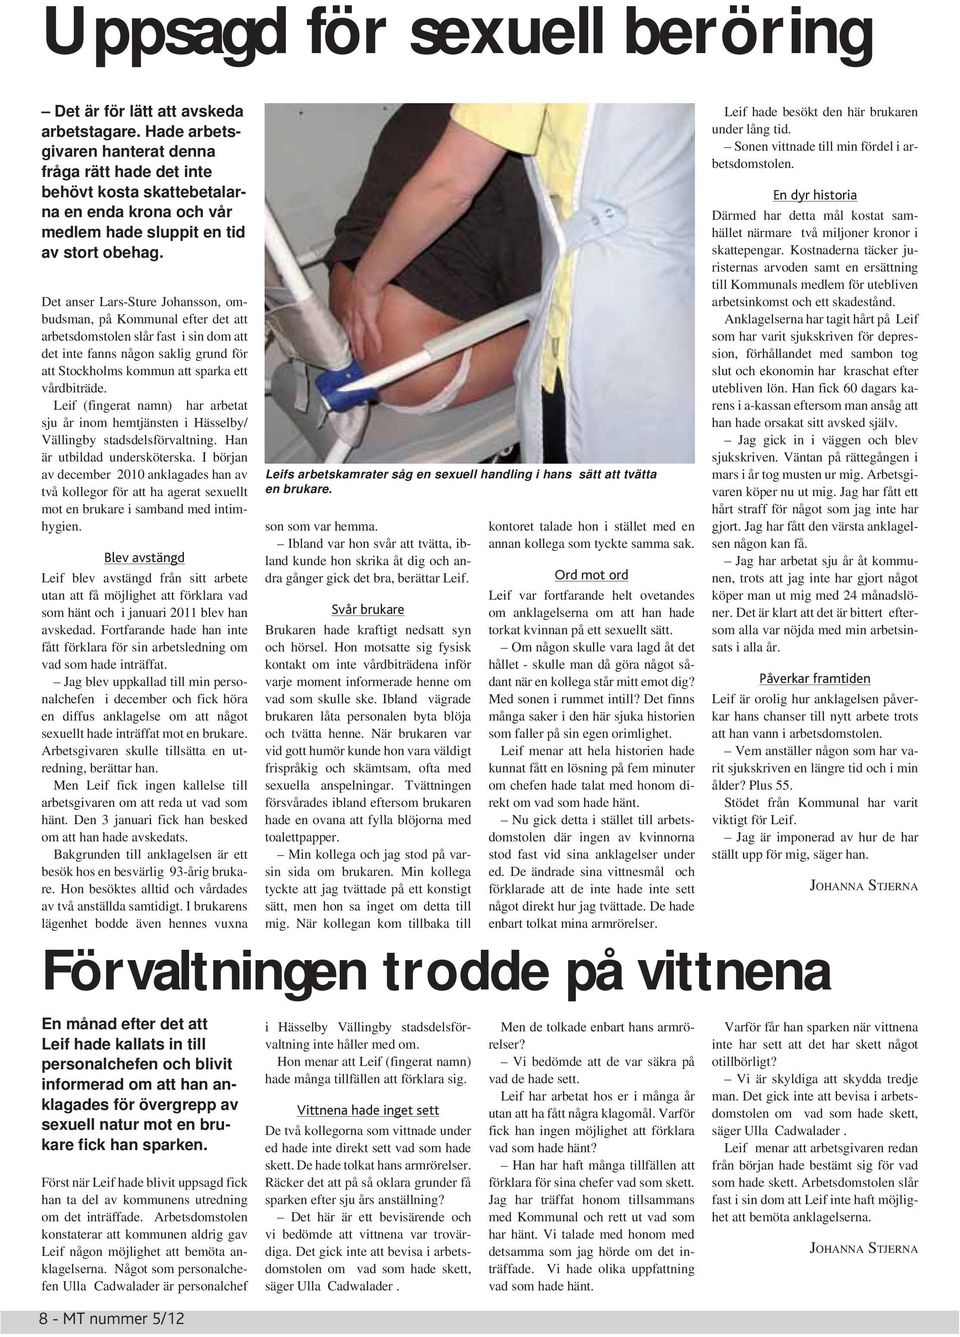 Det anser Lars-Sture Johansson, ombudsman, på Kommunal efter det att arbetsdomstolen slår fast i sin dom att det inte fanns någon saklig grund för att Stockholms kommun att sparka ett vårdbiträde.